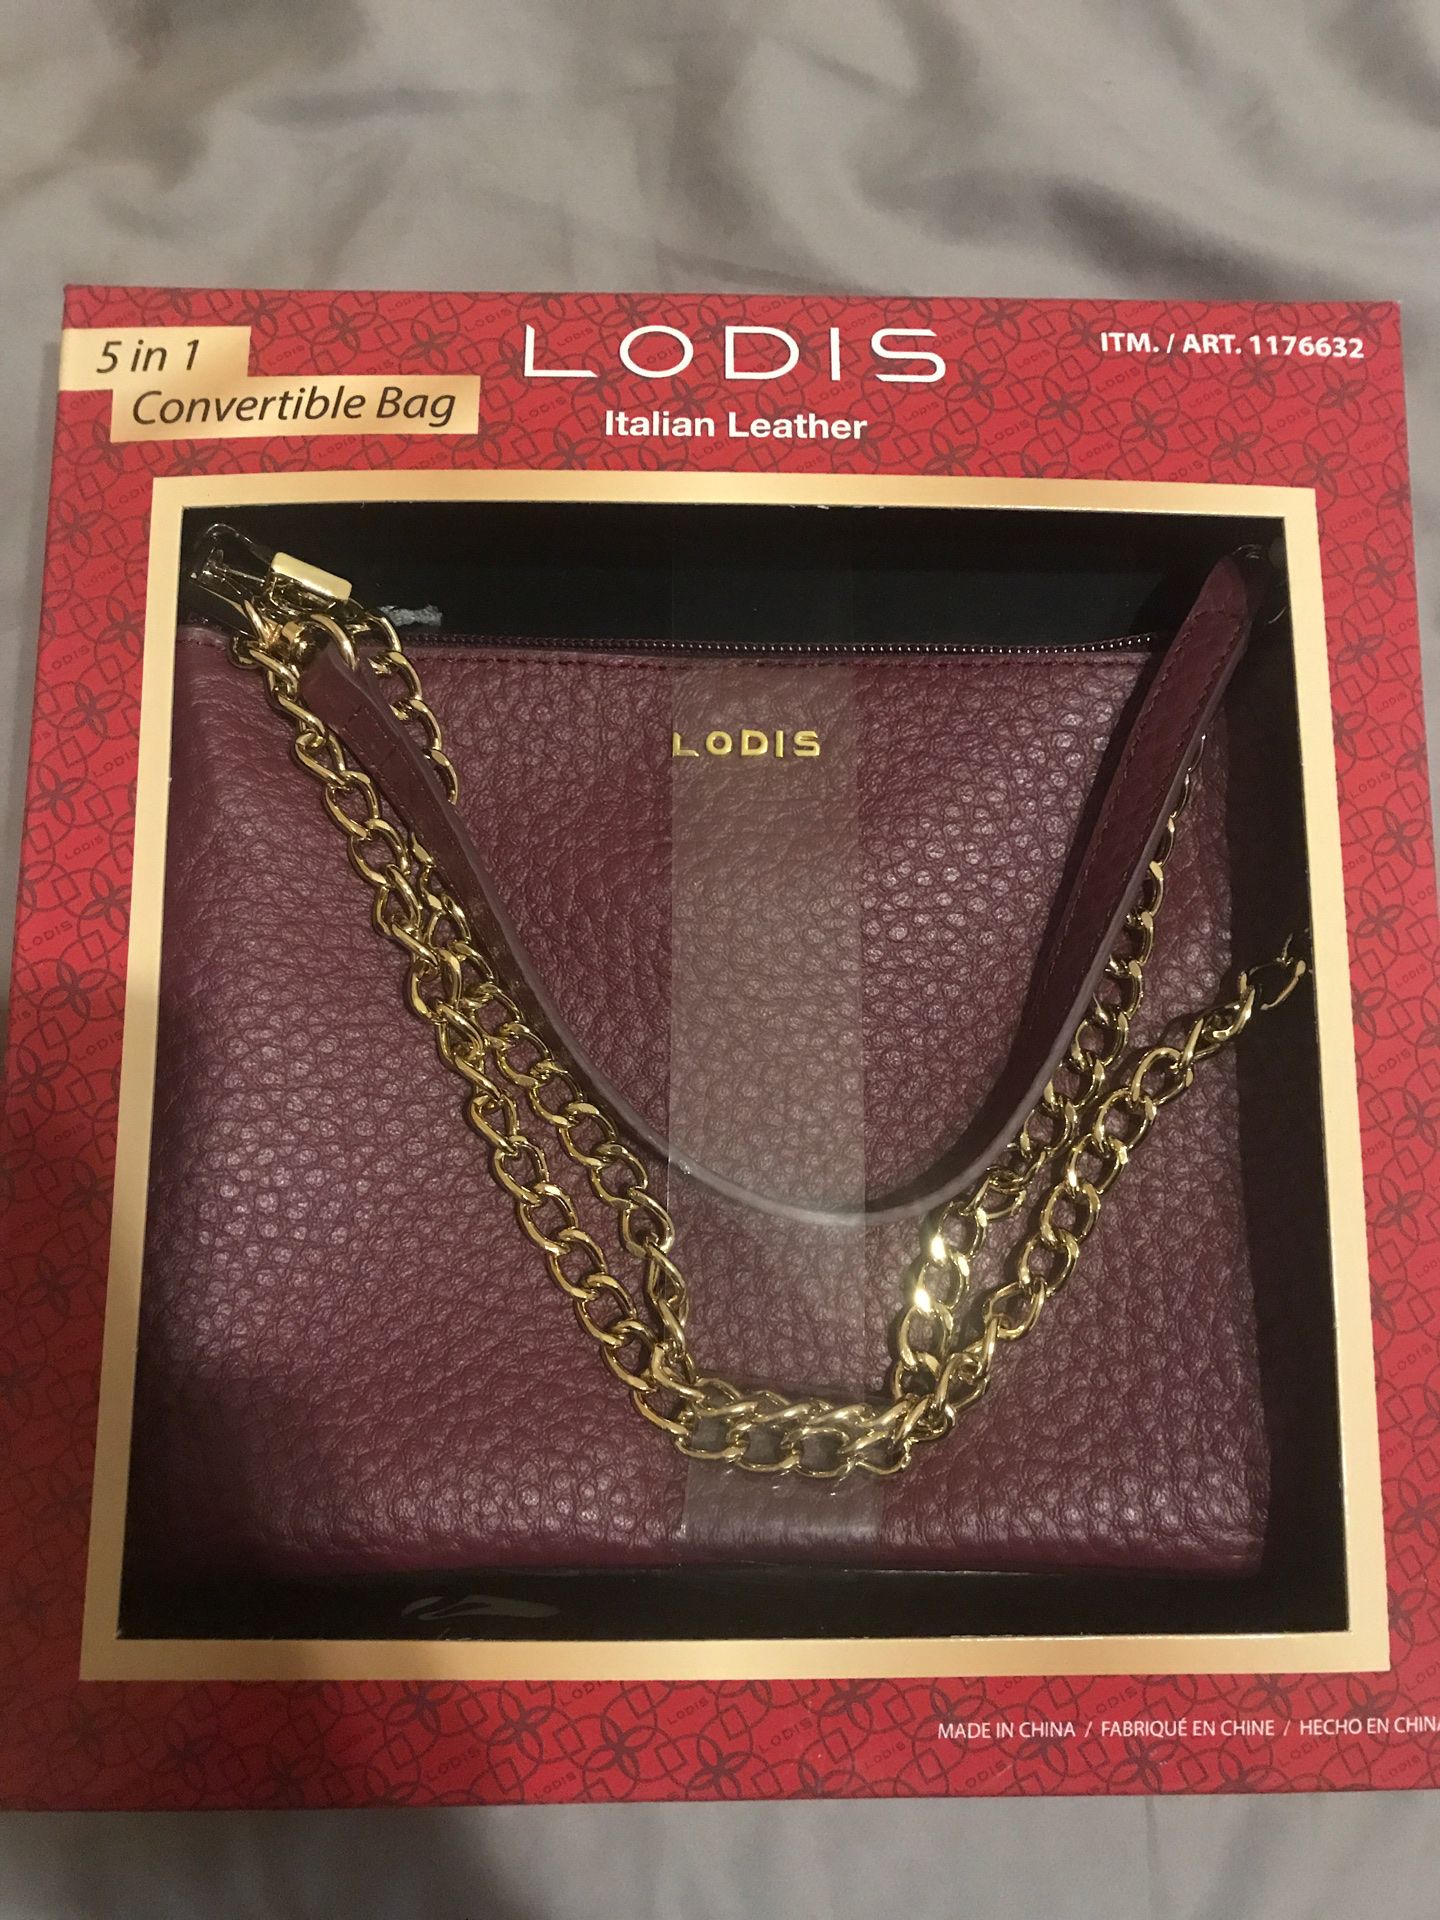 Lodi’s Italian Leather 5-in-1 Convertible Bag Purse